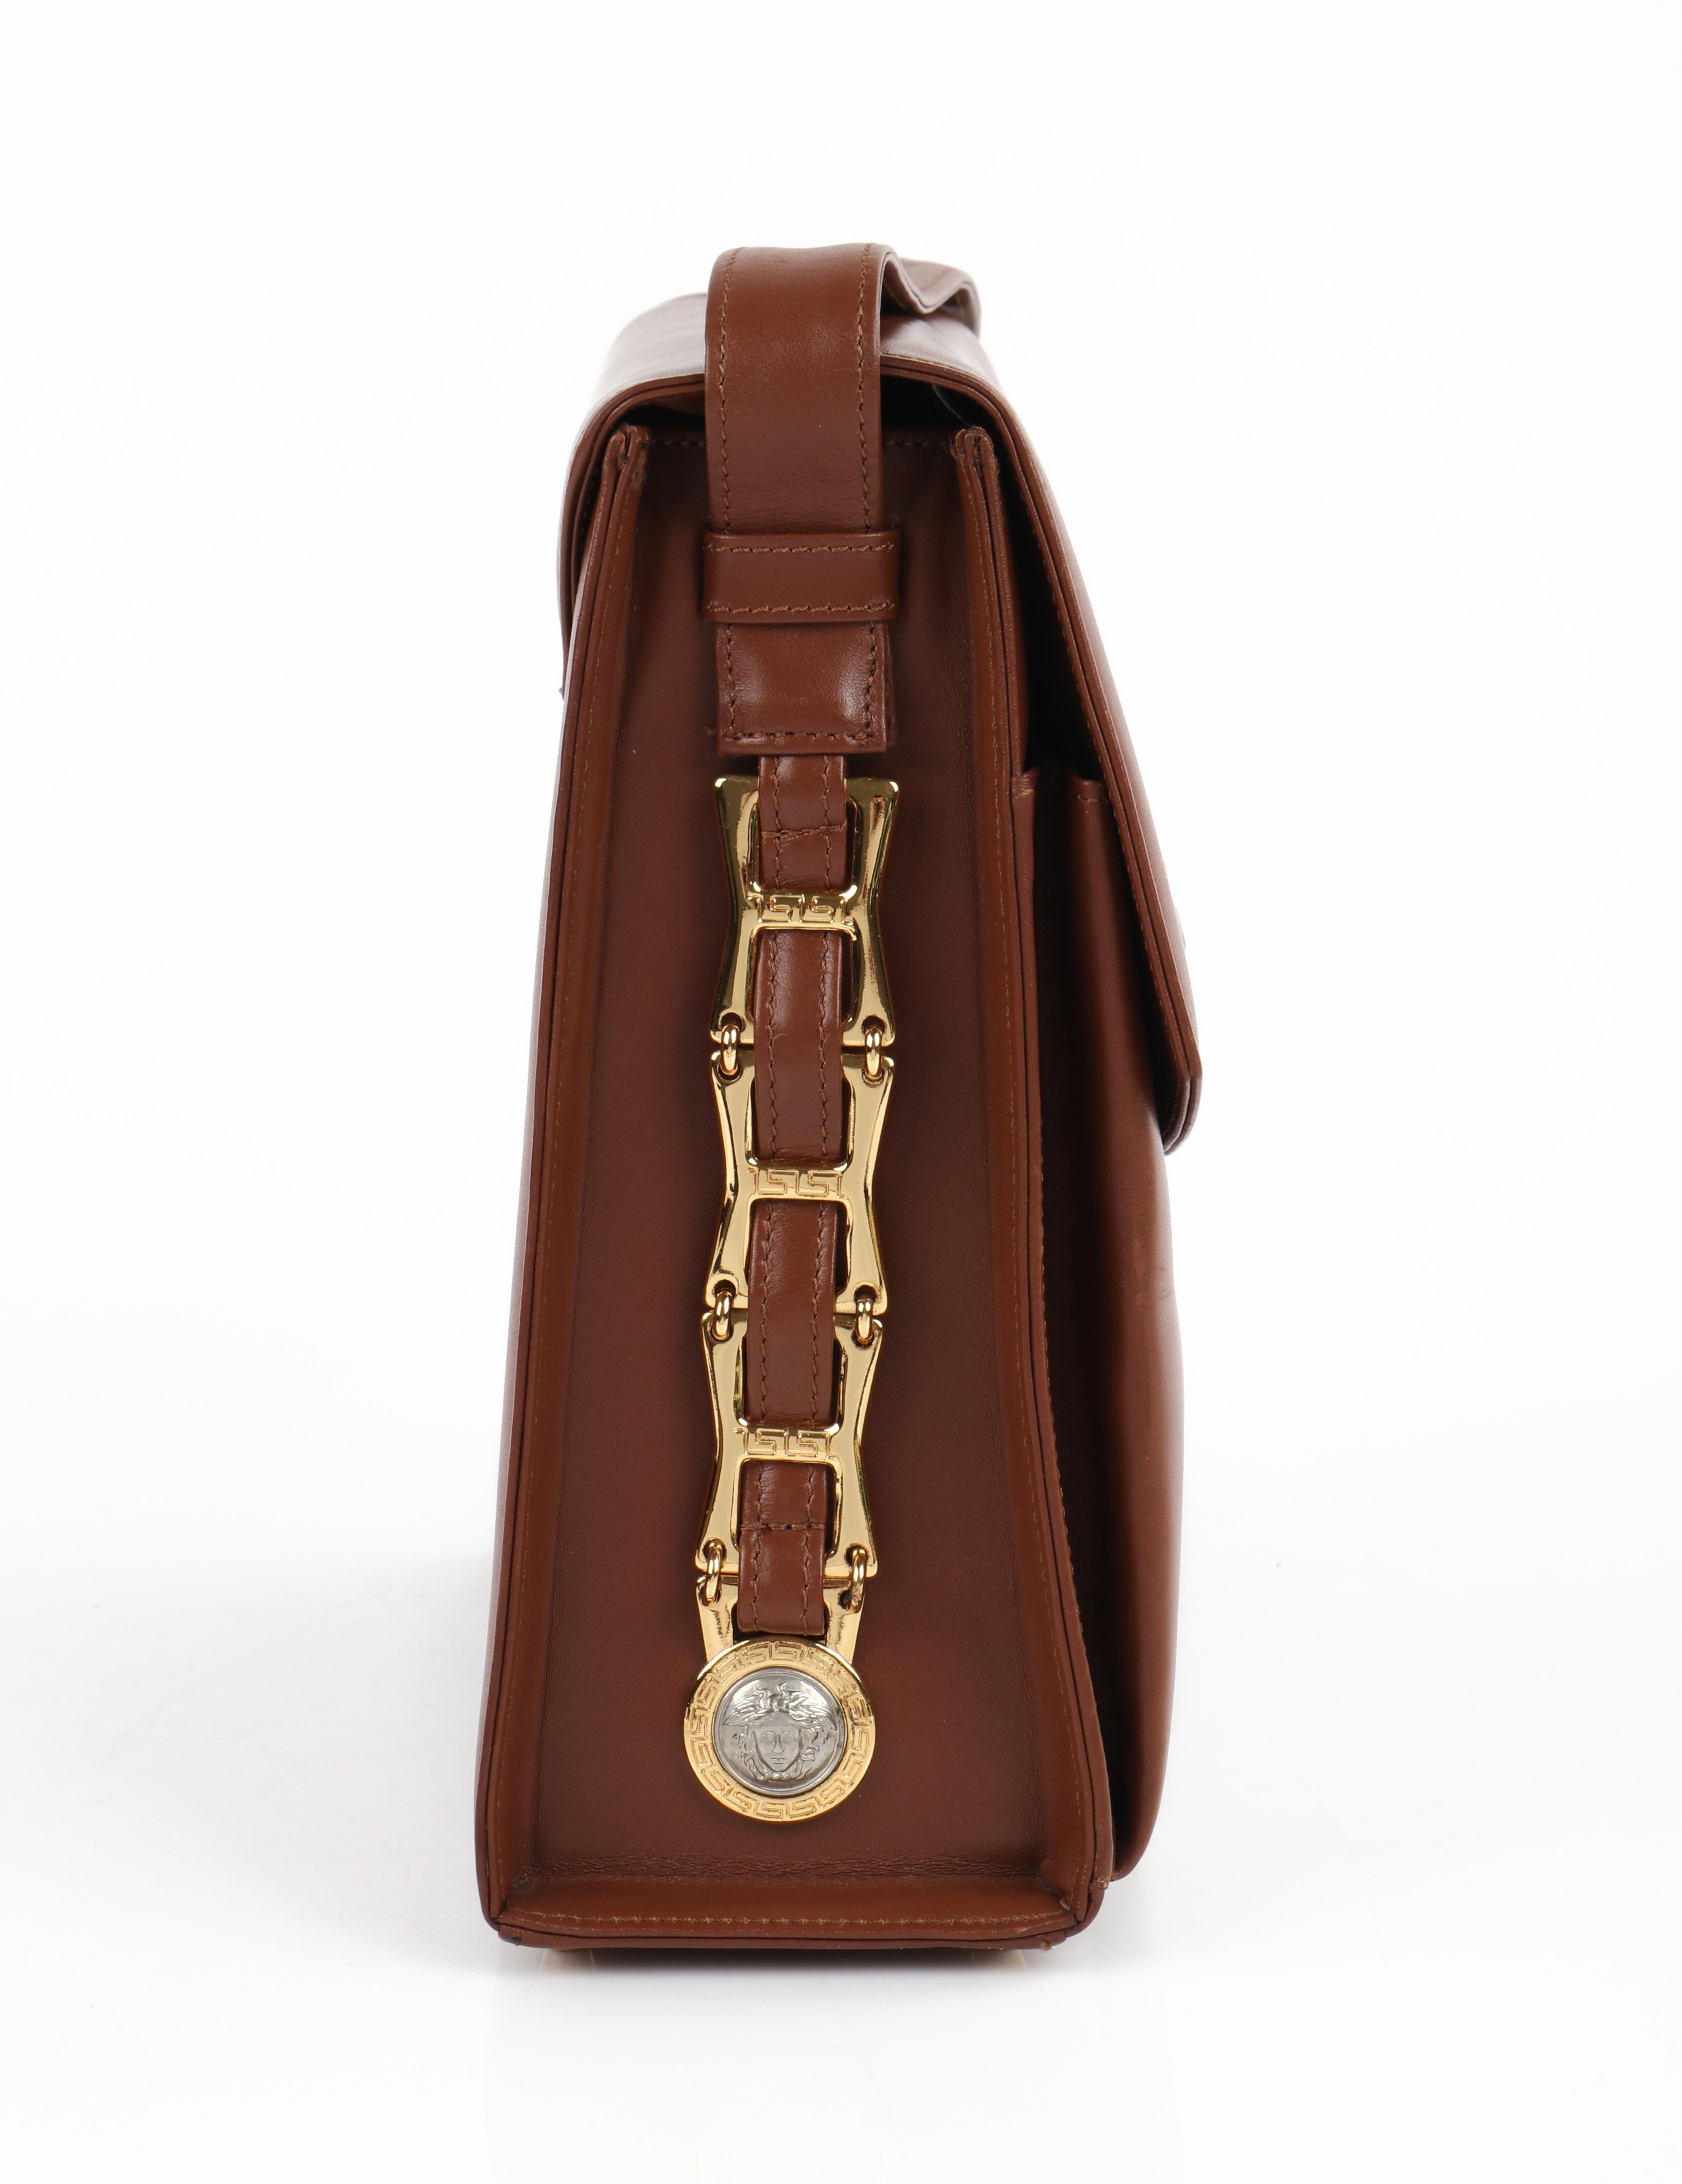 GIANNI VERSACE c.1993 Brown Leather Medusa Emblem Coin Lock Shoulder Bag Purse For Sale 2